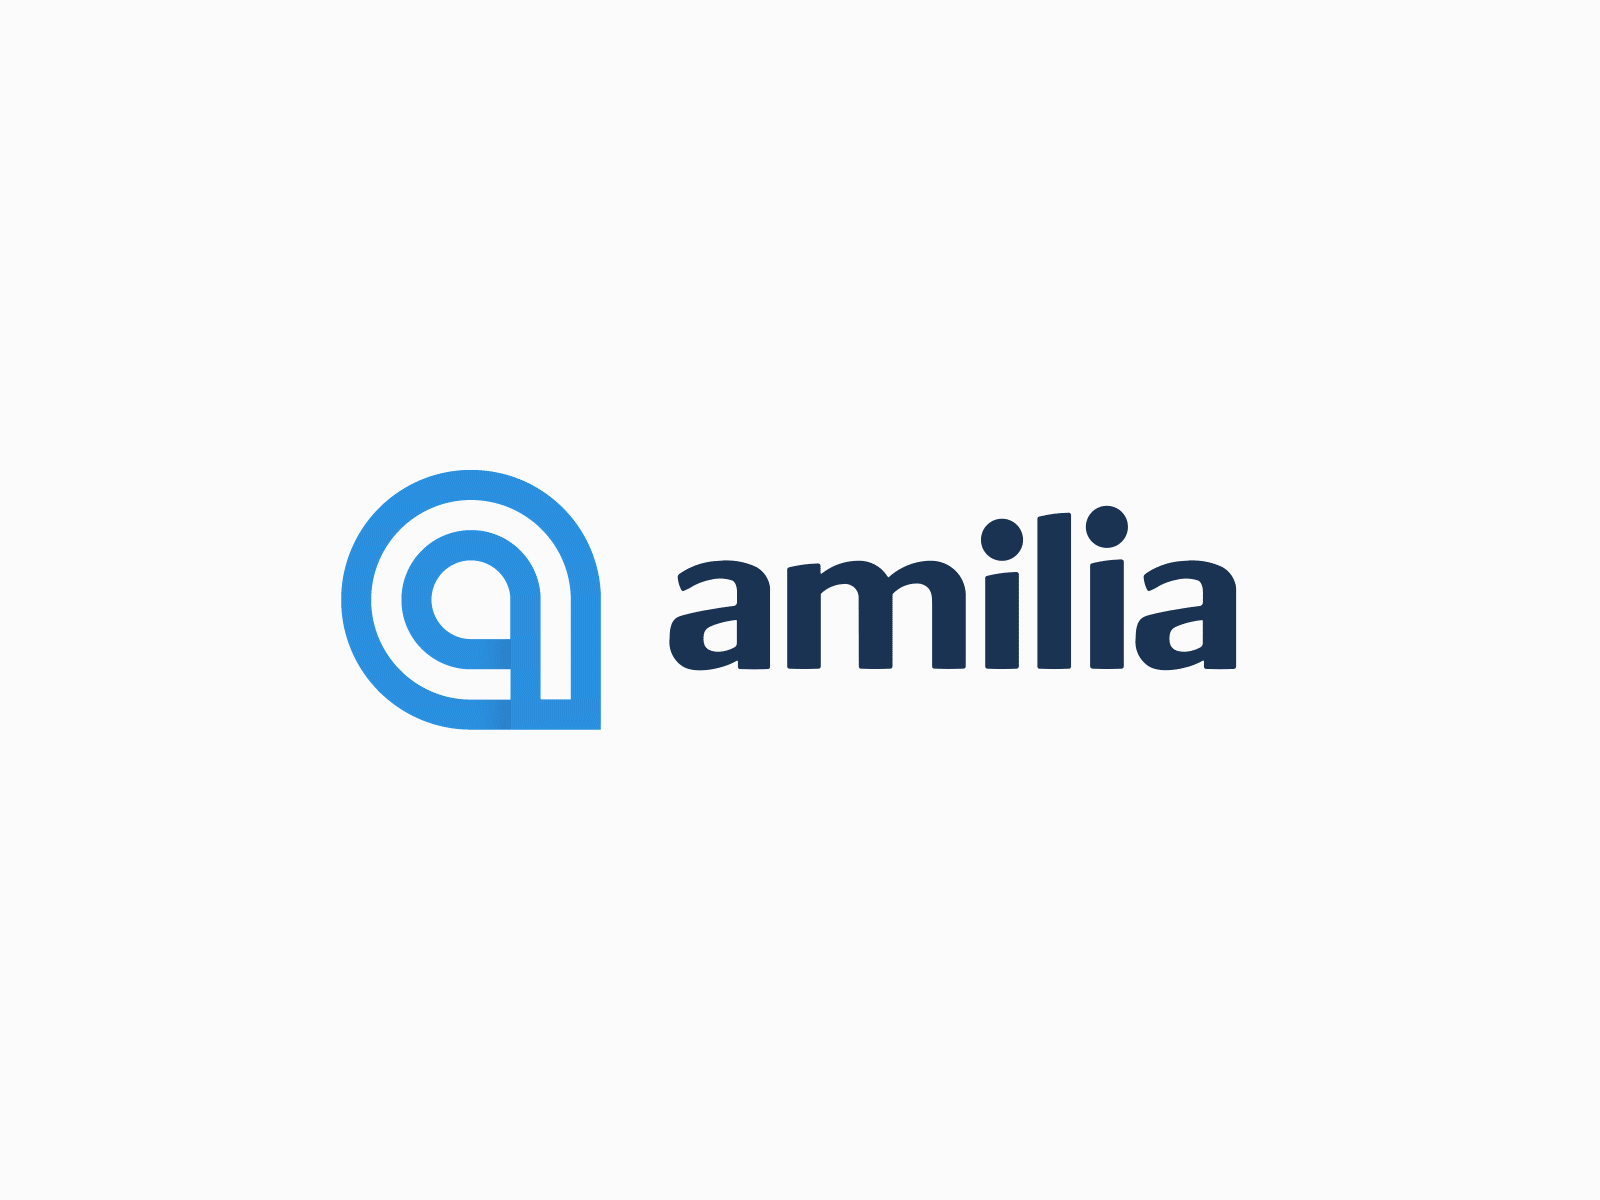 Say hello to the new Amilia logo